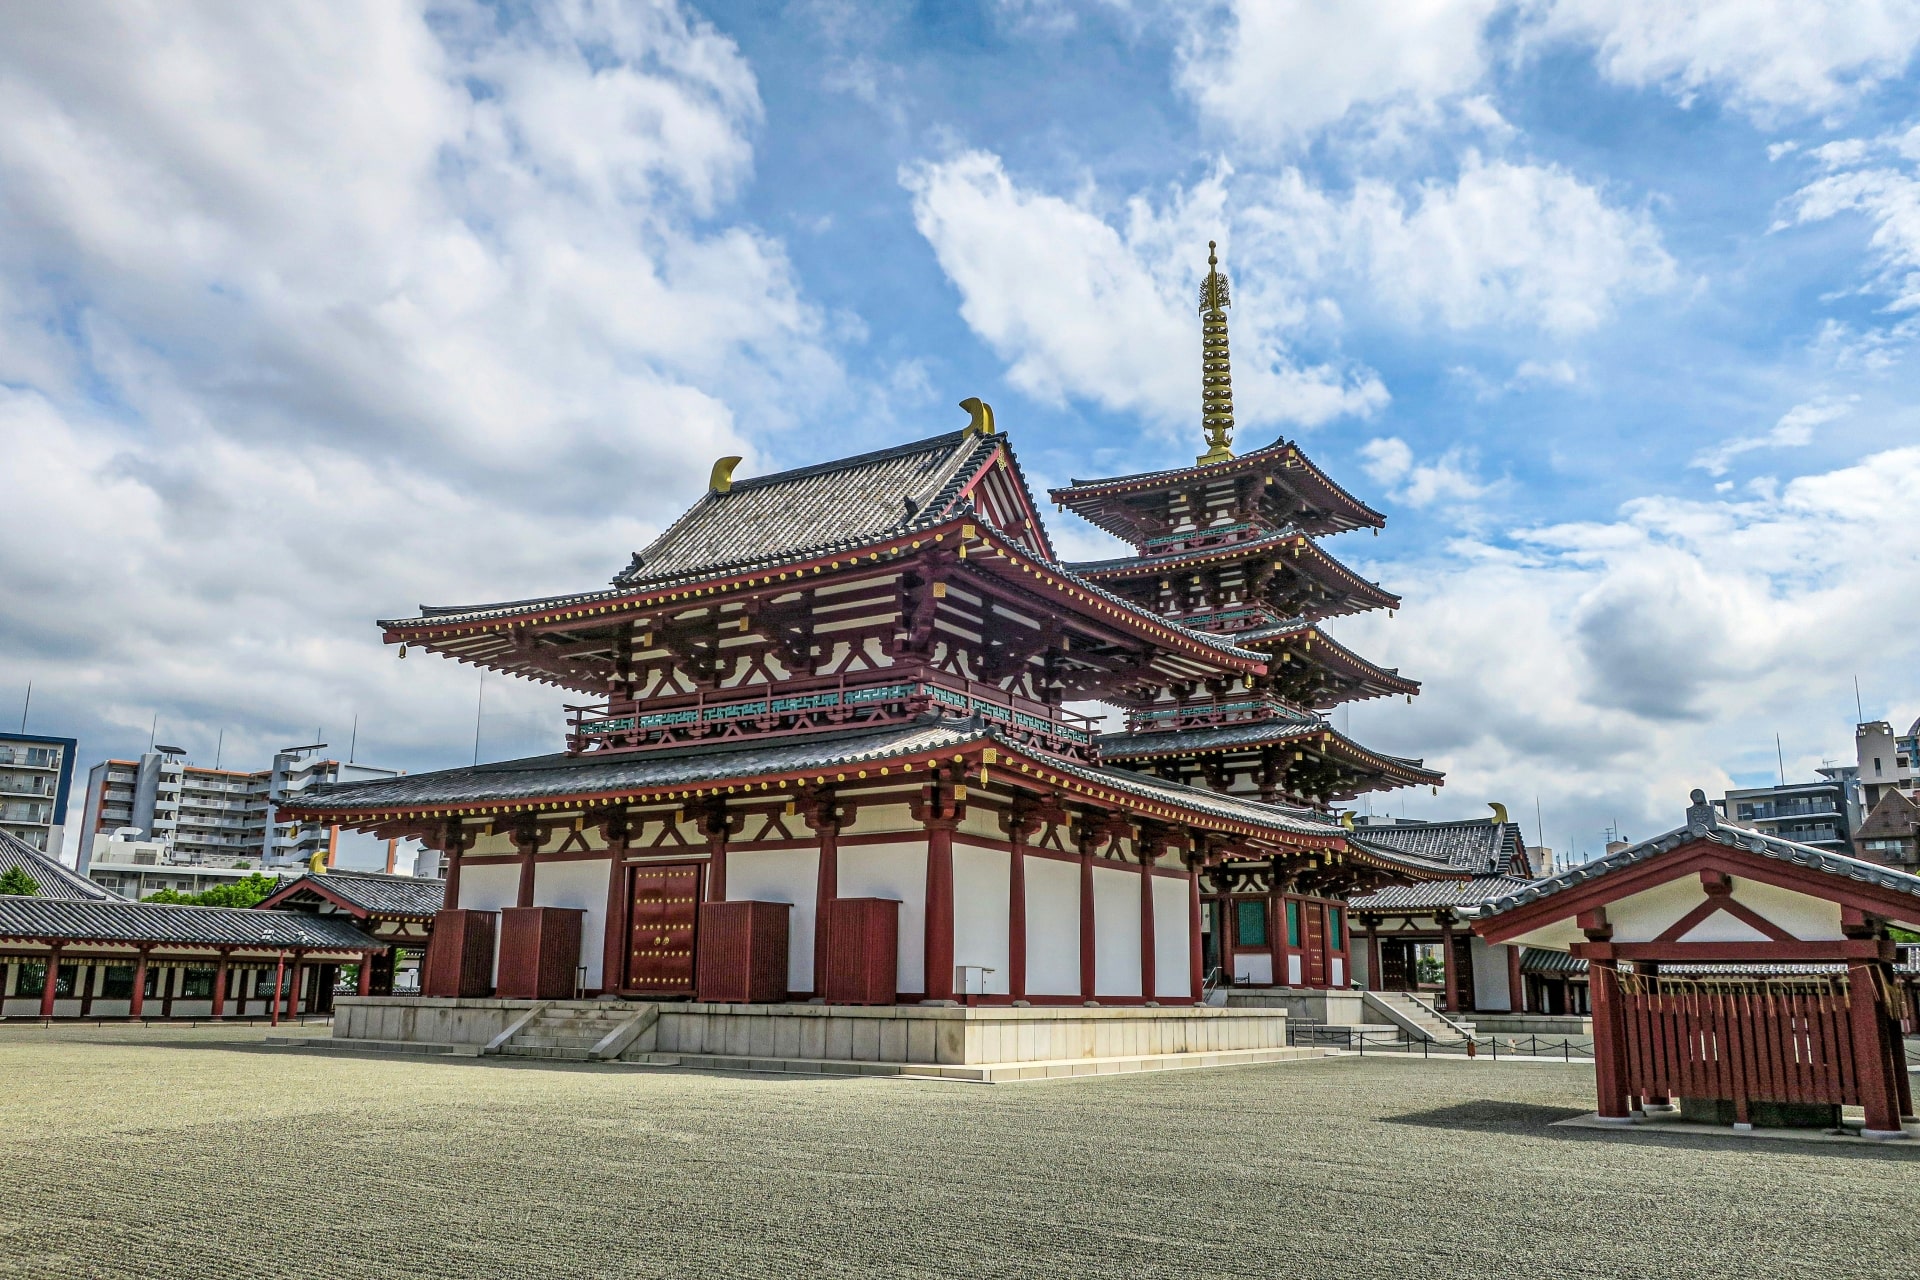 Shitennoji Temple